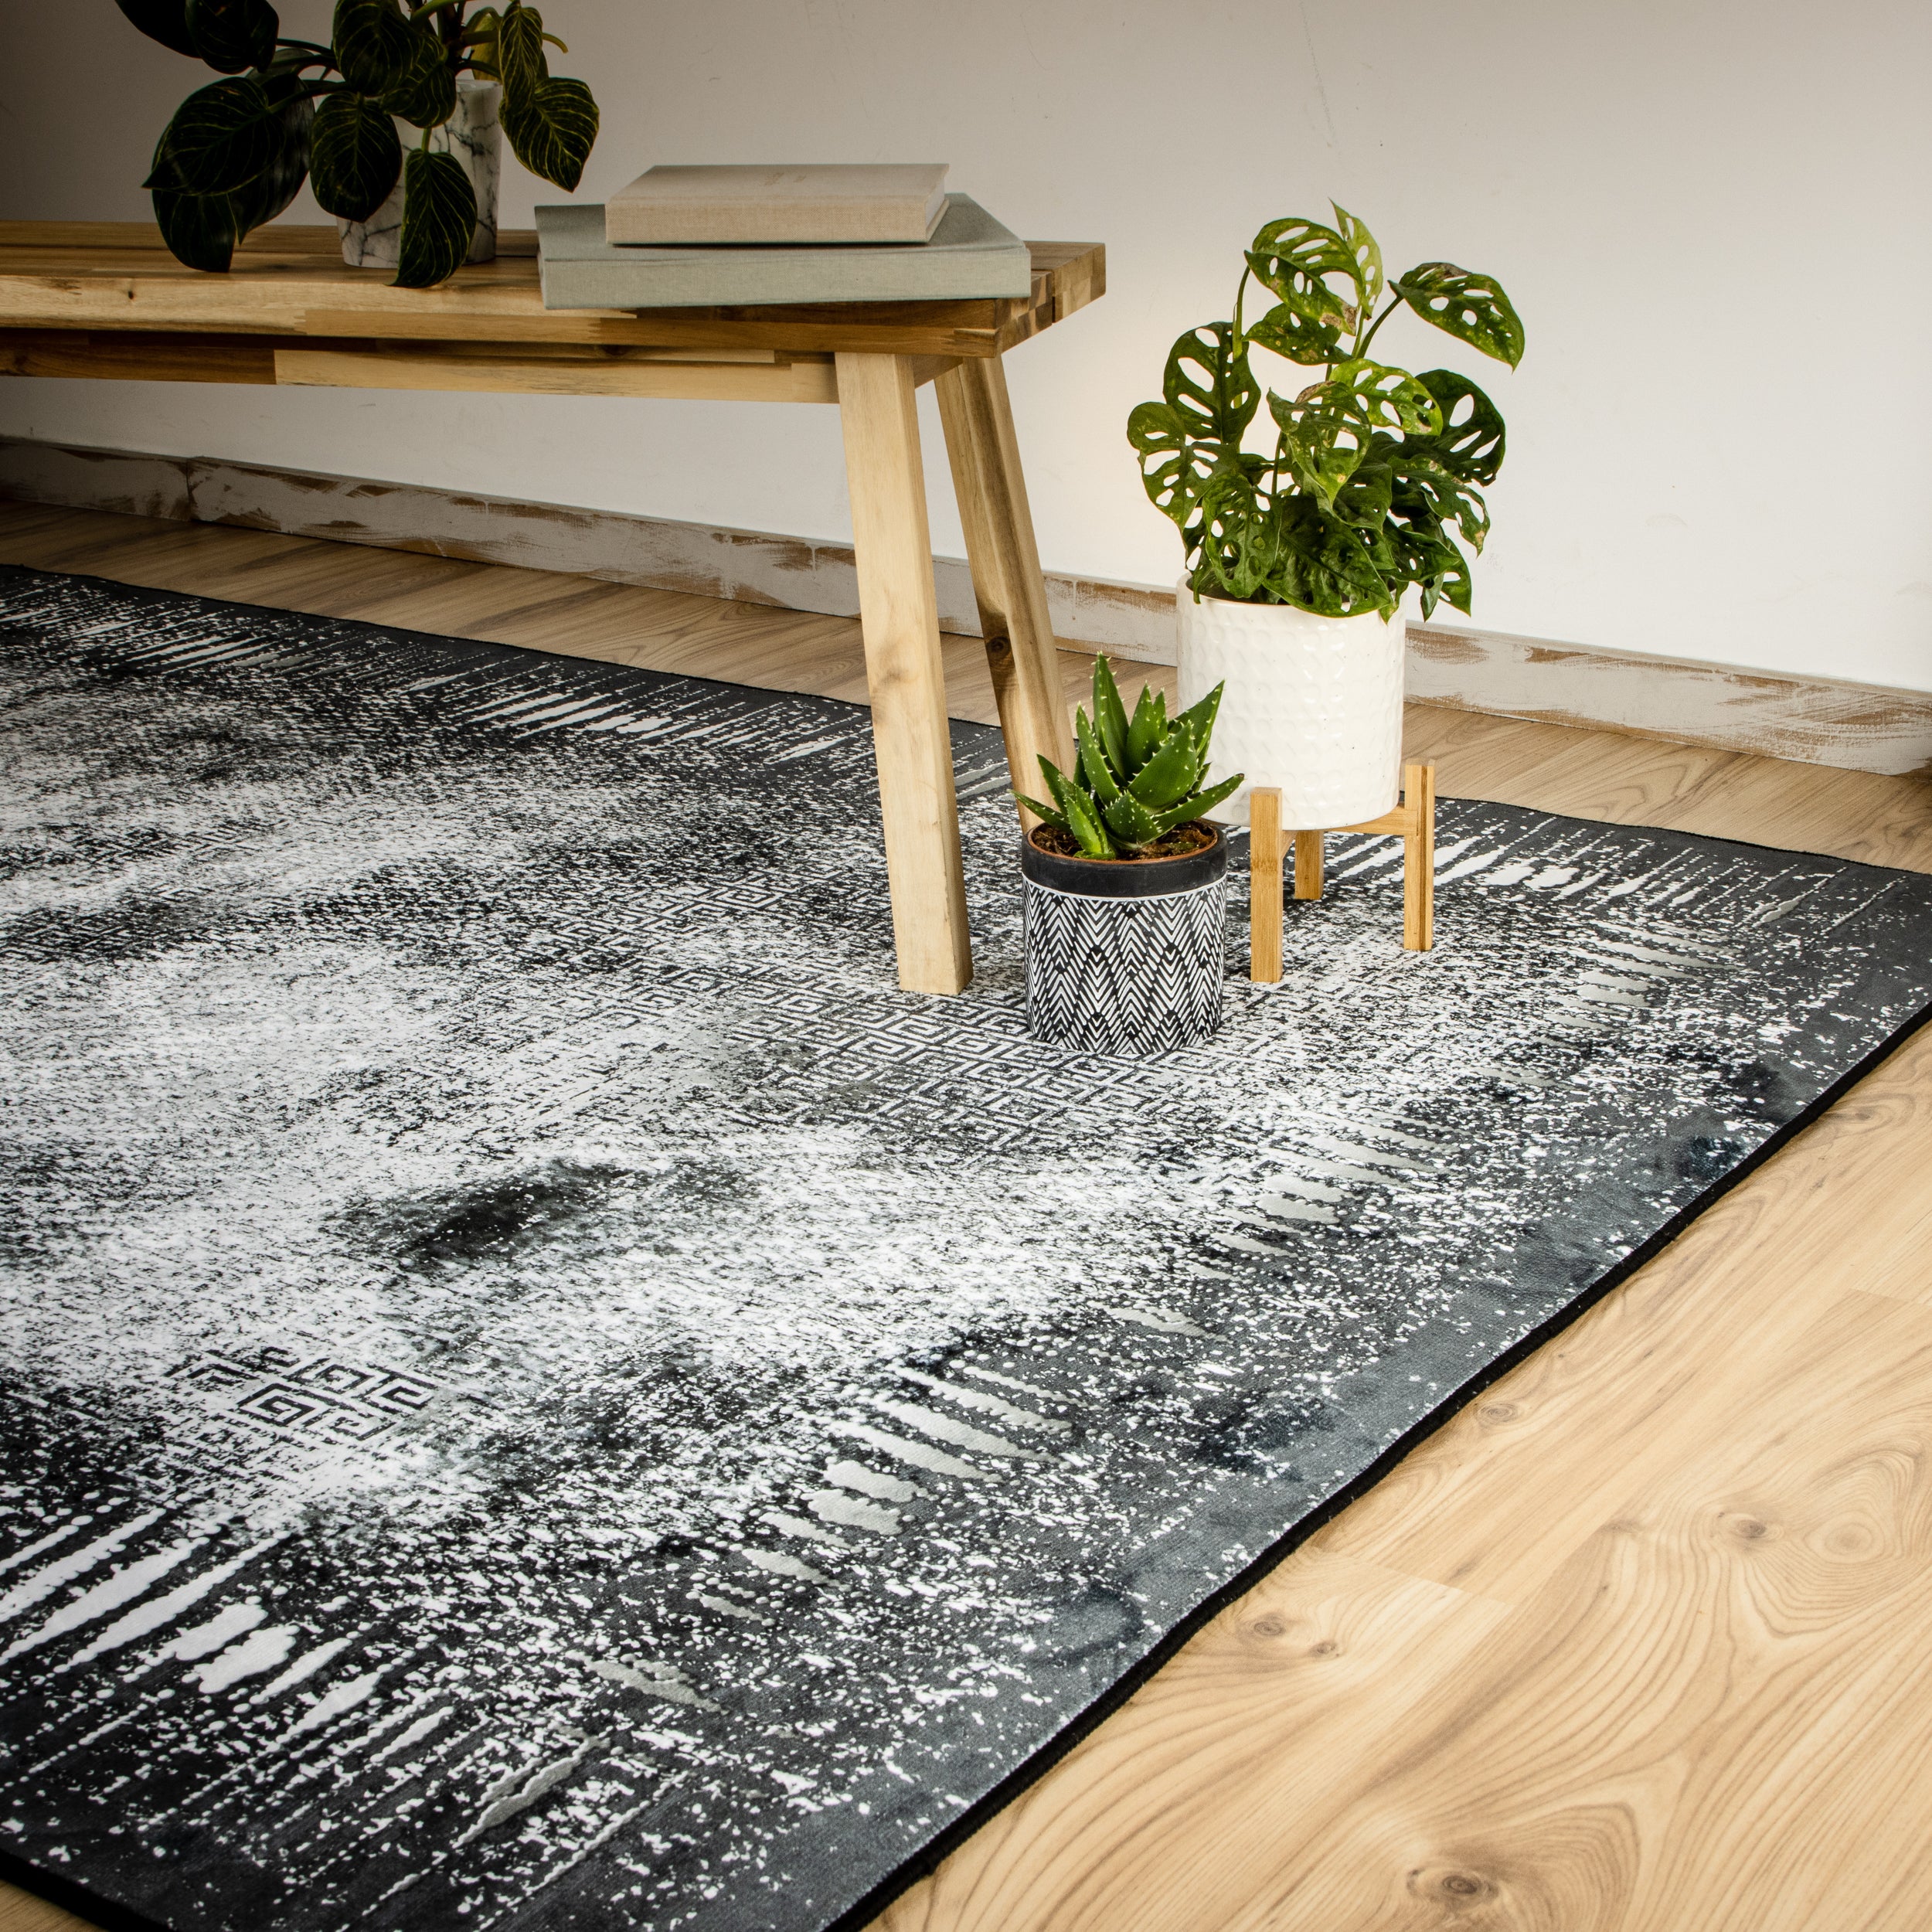 My Tampa 132 grey Teppich: Stilvolles Design, praktische Funktionalität für dein Zuhause